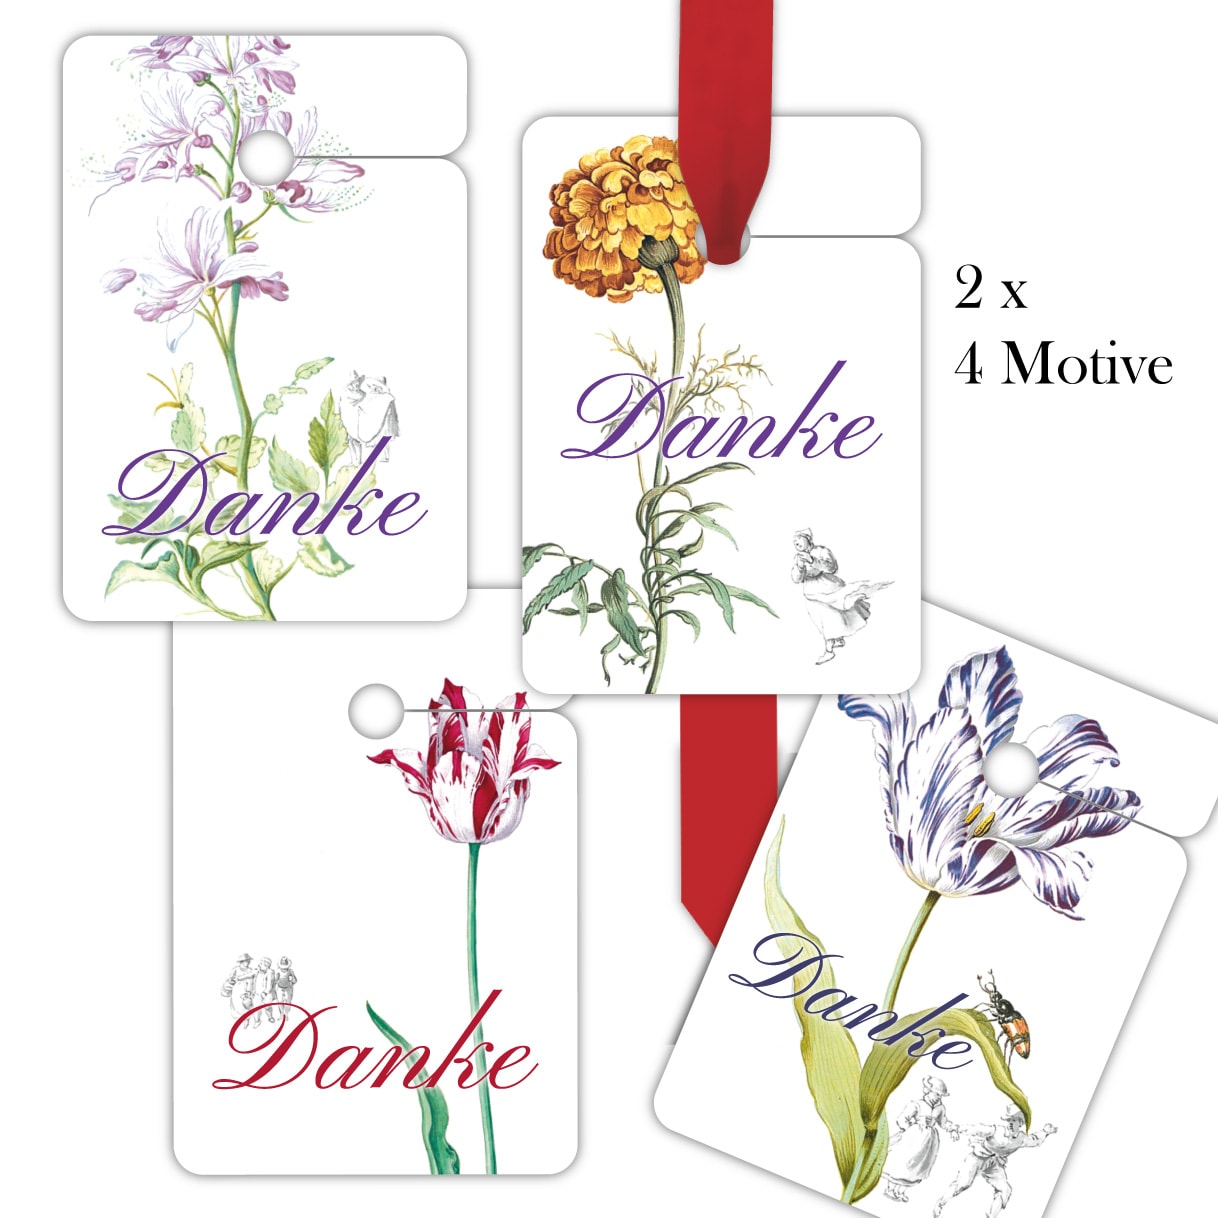 Kartenkaufrausch: schöne Dankes Geschenkanhänger aus unserer Designer Papeterie in weiß